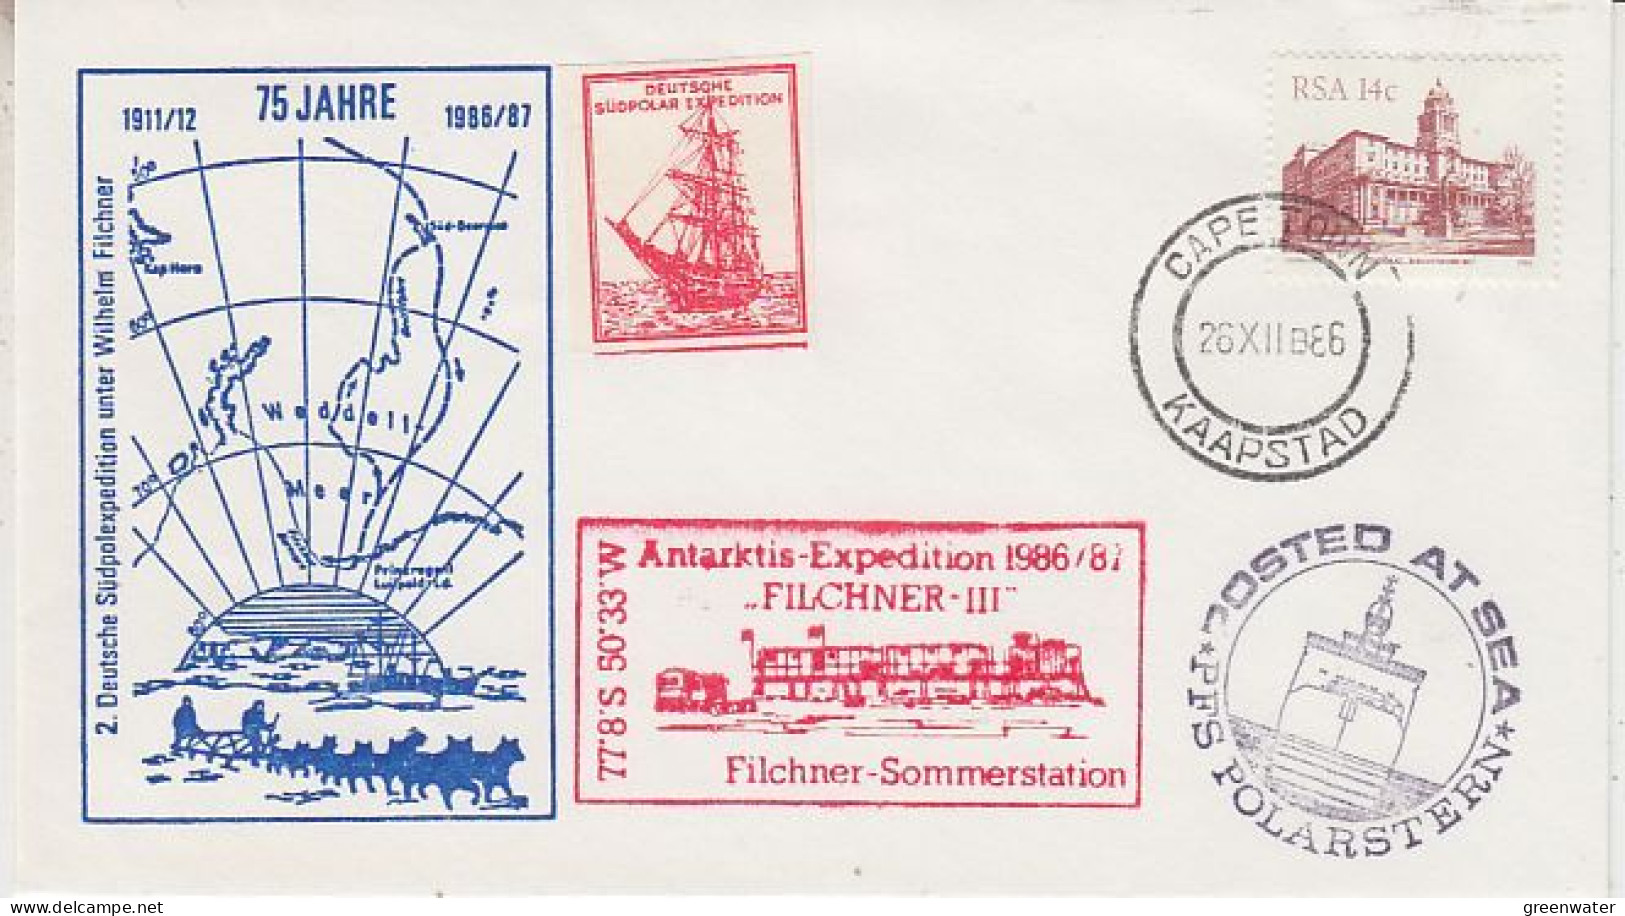 South Africa Antarktis Expedition 1986/87 Filchner III Label Deutsche Ant. Expo Ca Cape Town 26.12.1986 (GS213) - Antarktis-Expeditionen